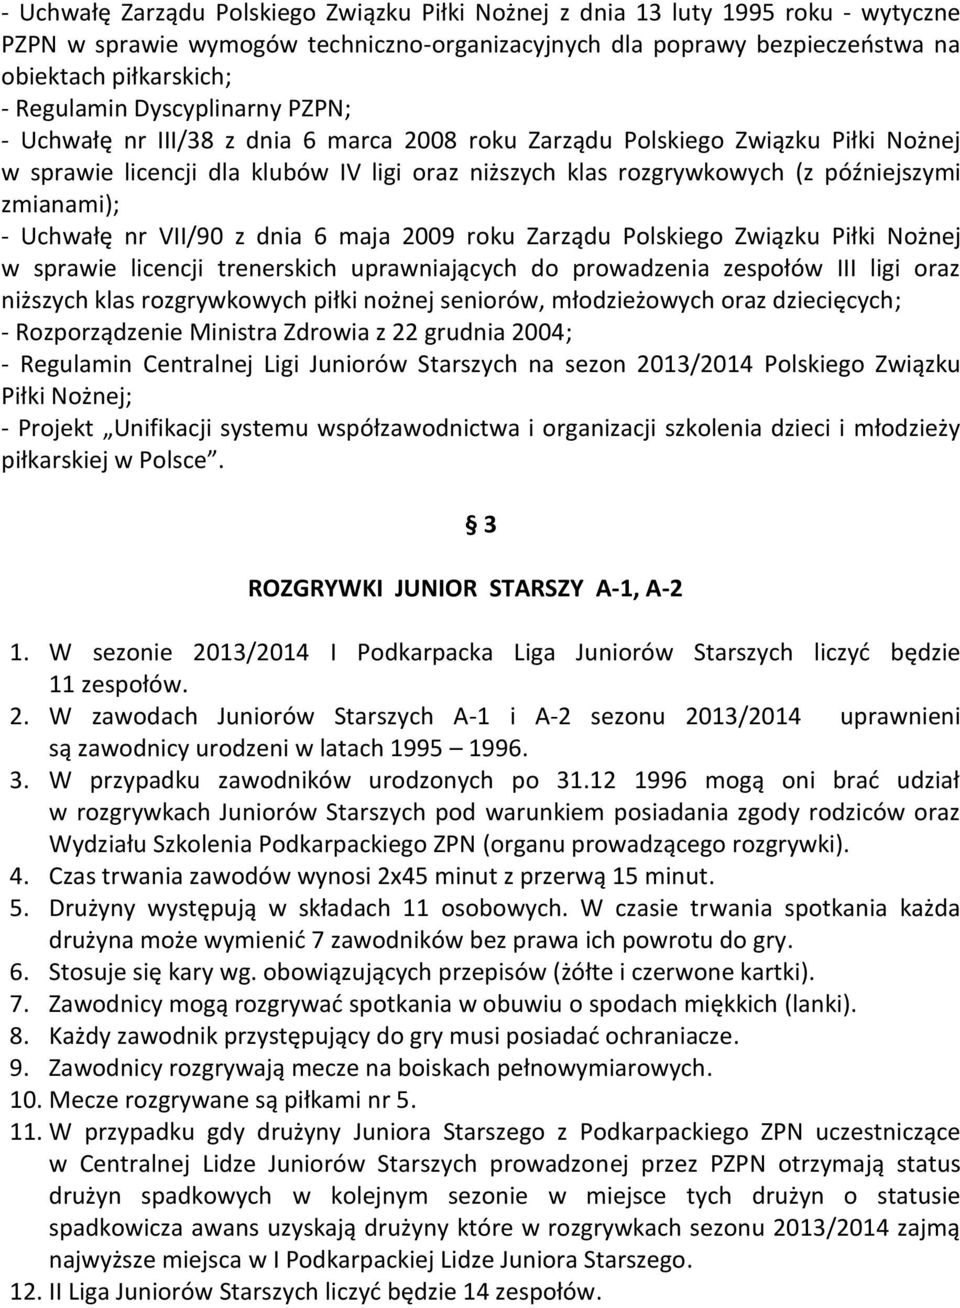 zmianami); - Uchwałę nr VII/90 z dnia 6 maja 2009 roku Zarządu Polskiego Związku Piłki Nożnej w sprawie licencji trenerskich uprawniających do prowadzenia zespołów III ligi oraz niższych klas